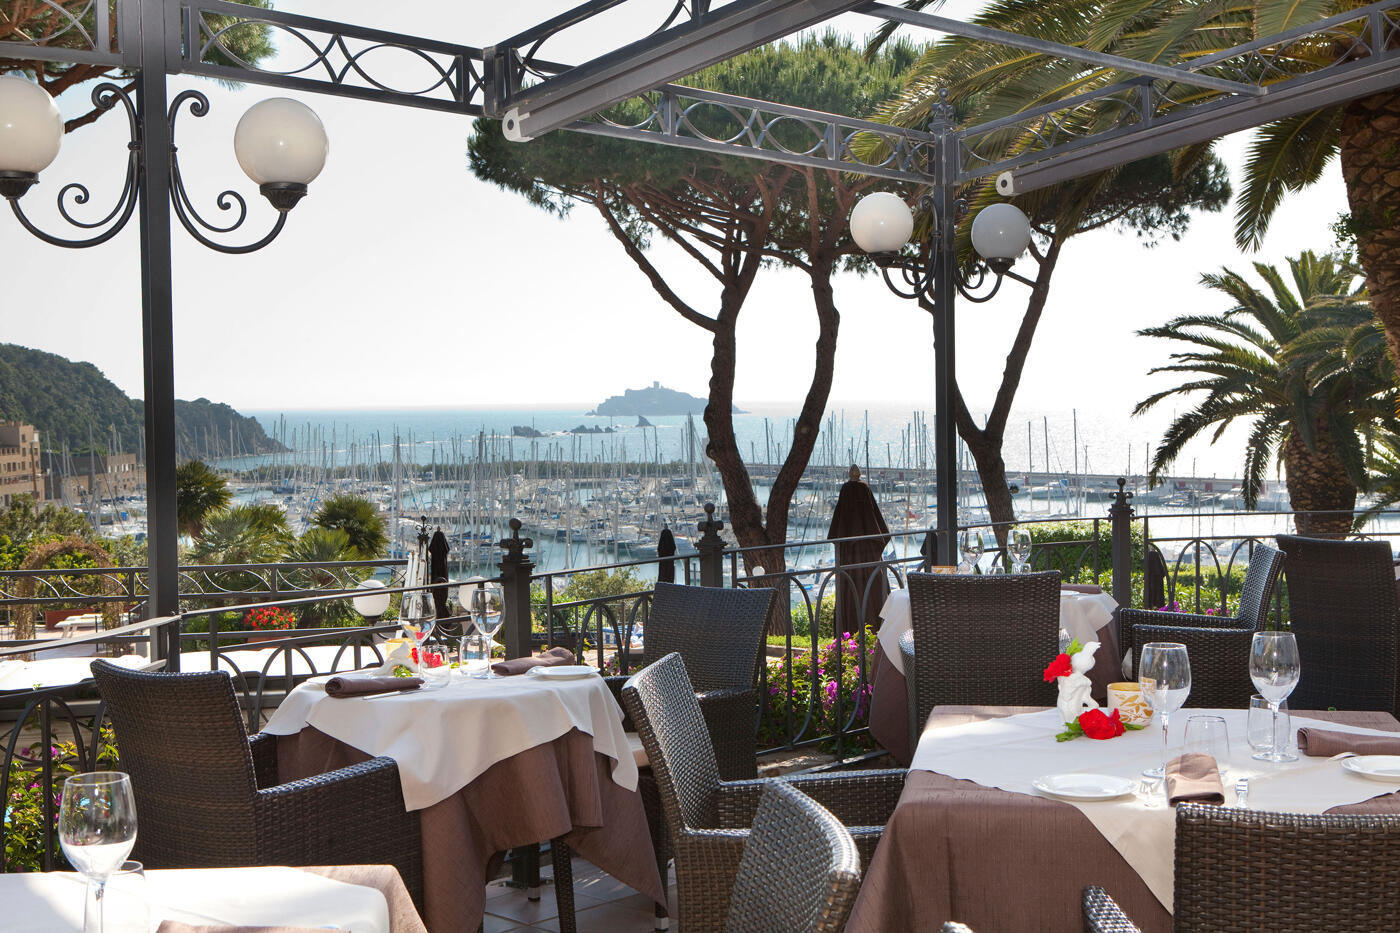 Restaurant Terrasse mit Blick auf Hafen und Meer.